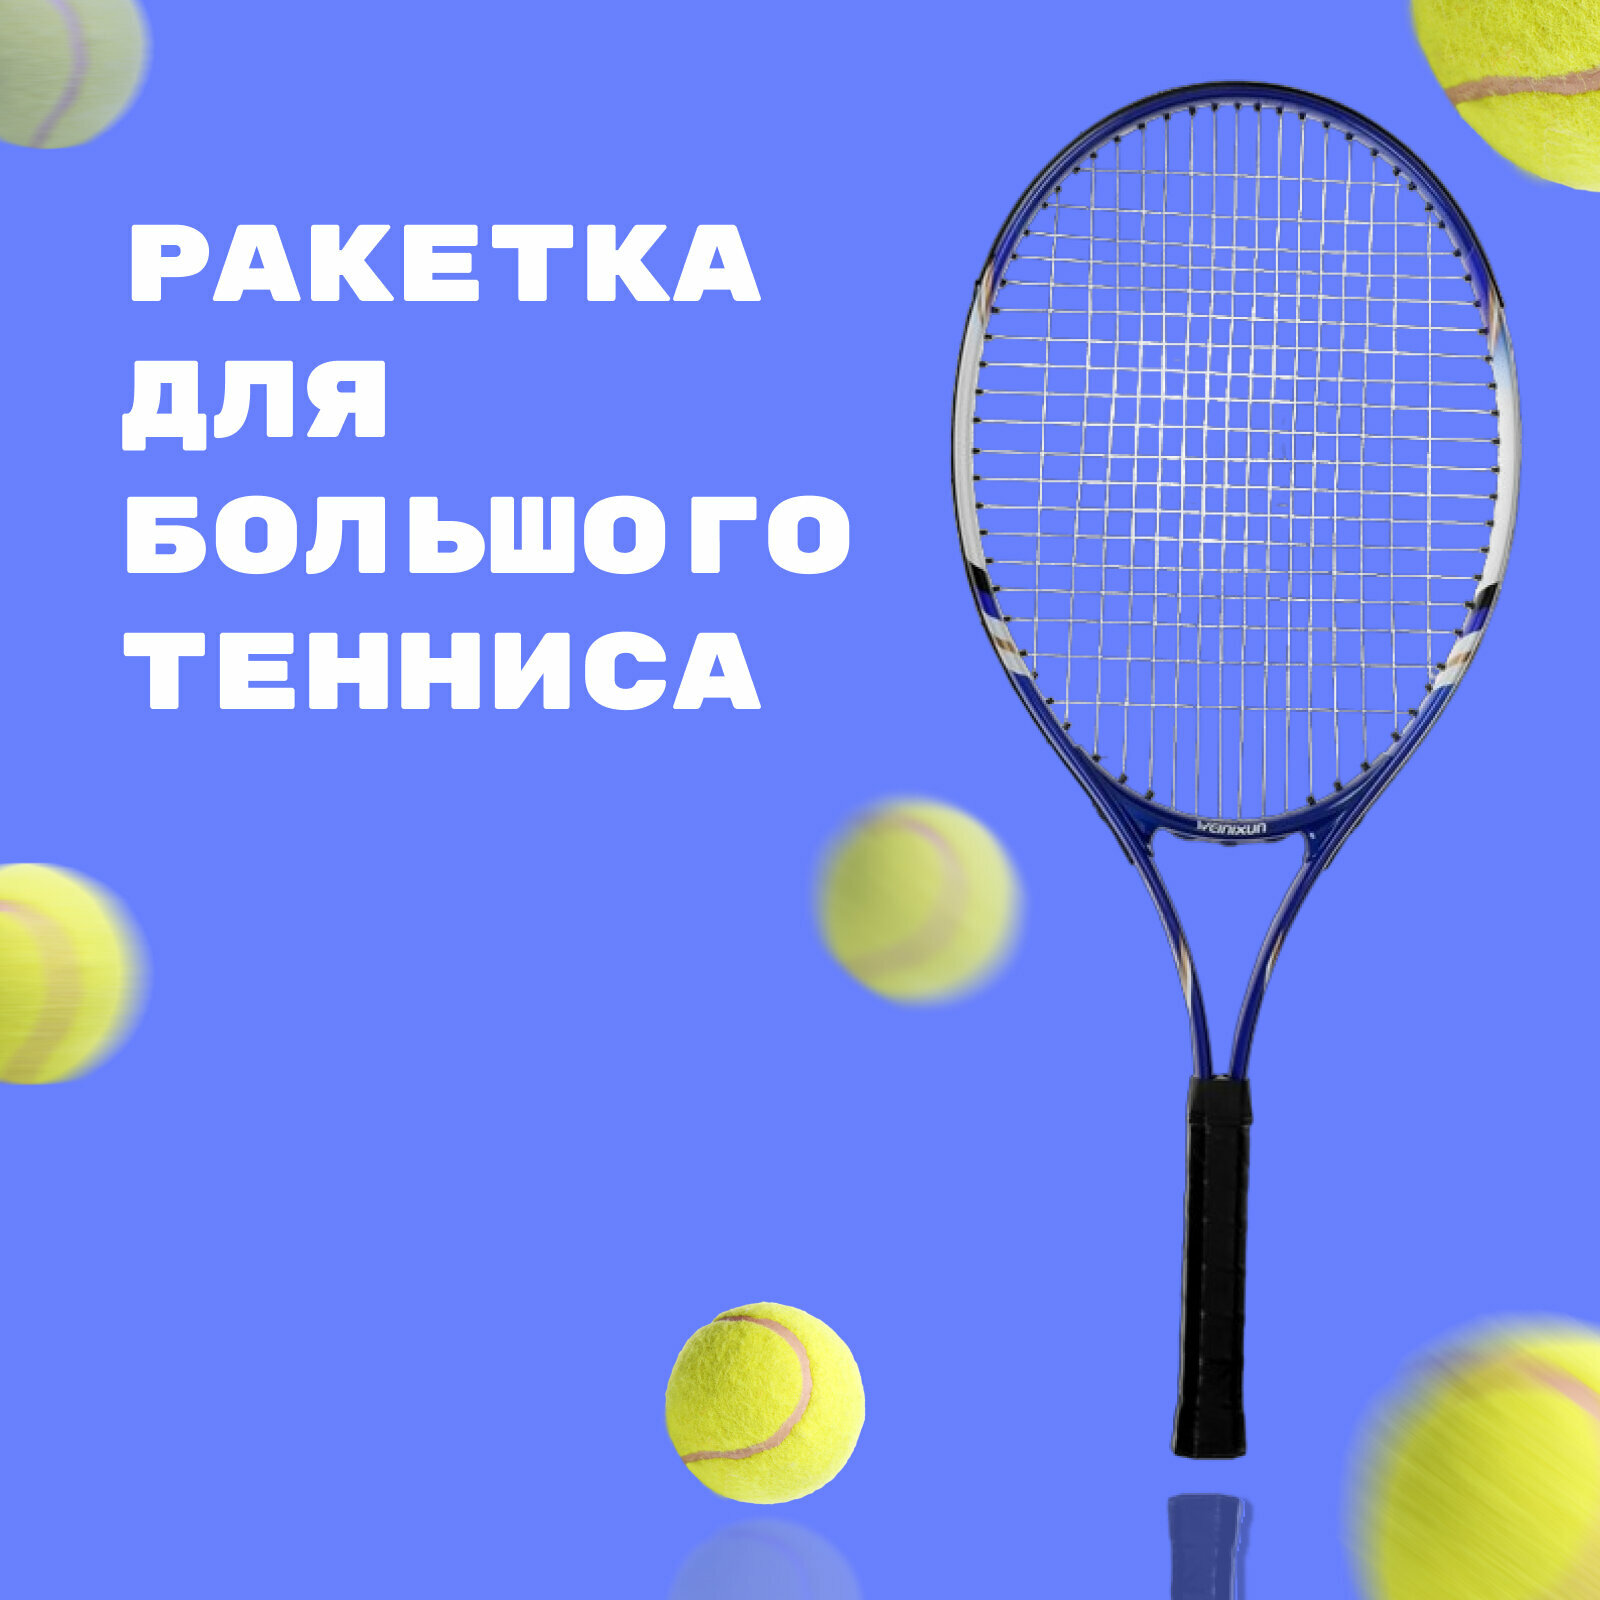 Ракетка для большого тенниса тренировочная в чехле цвет синий